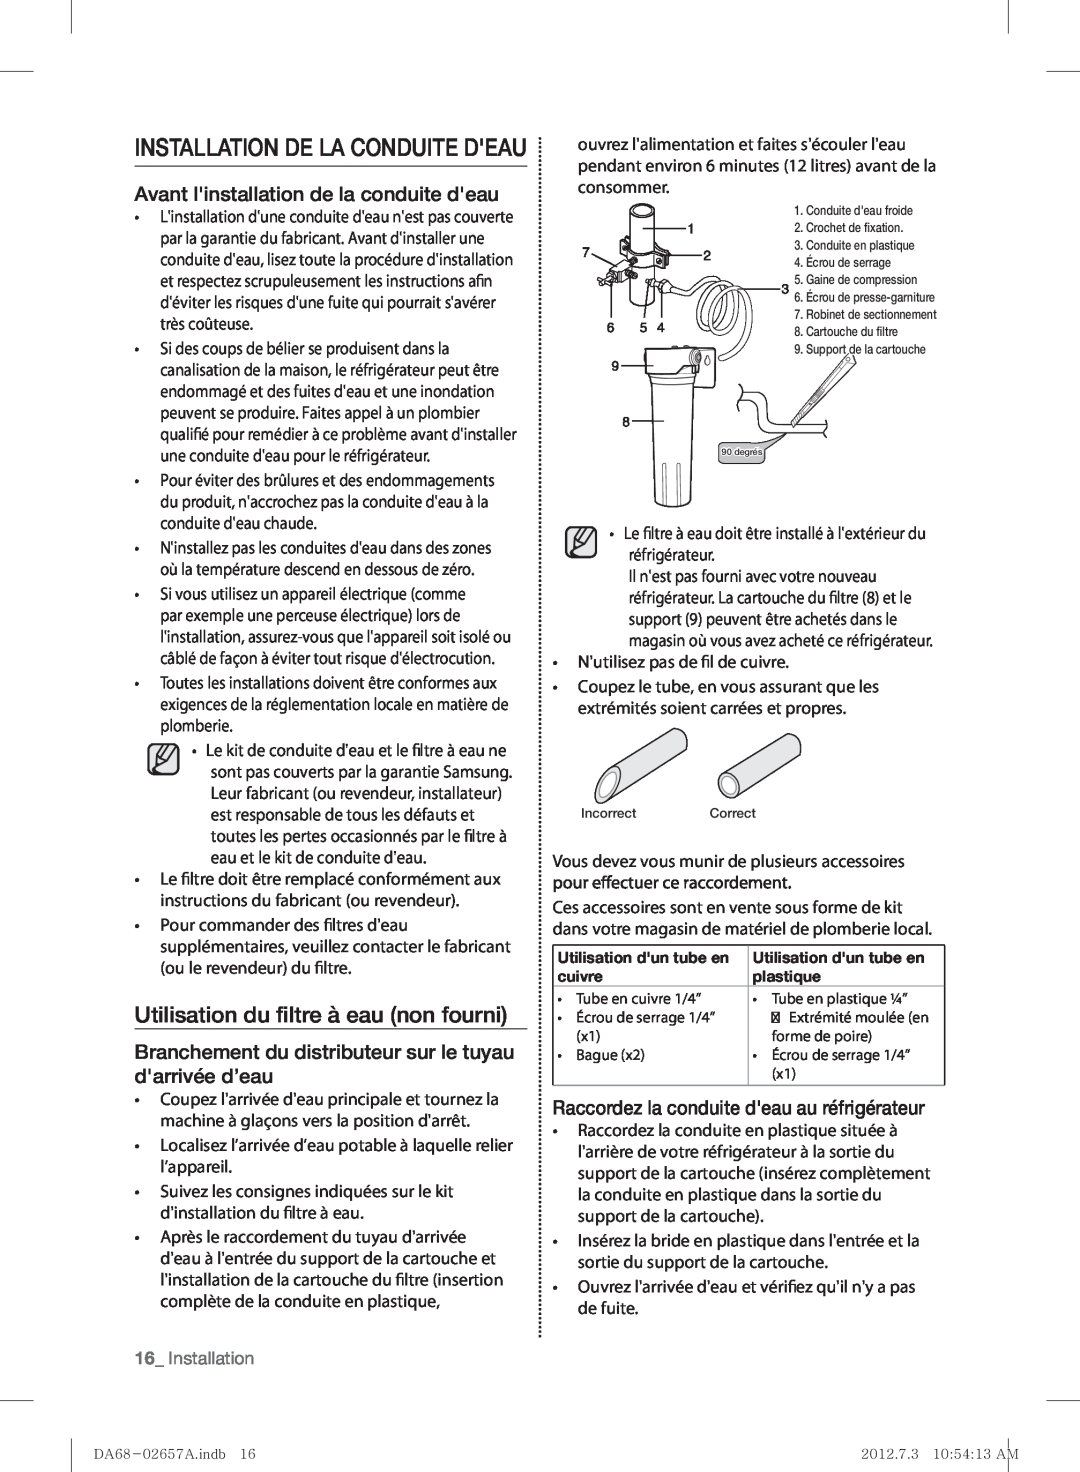 Samsung RF221NCTABC user manual Installation De La Conduite Deau, Utilisation du ﬁltre à eau non fourni 